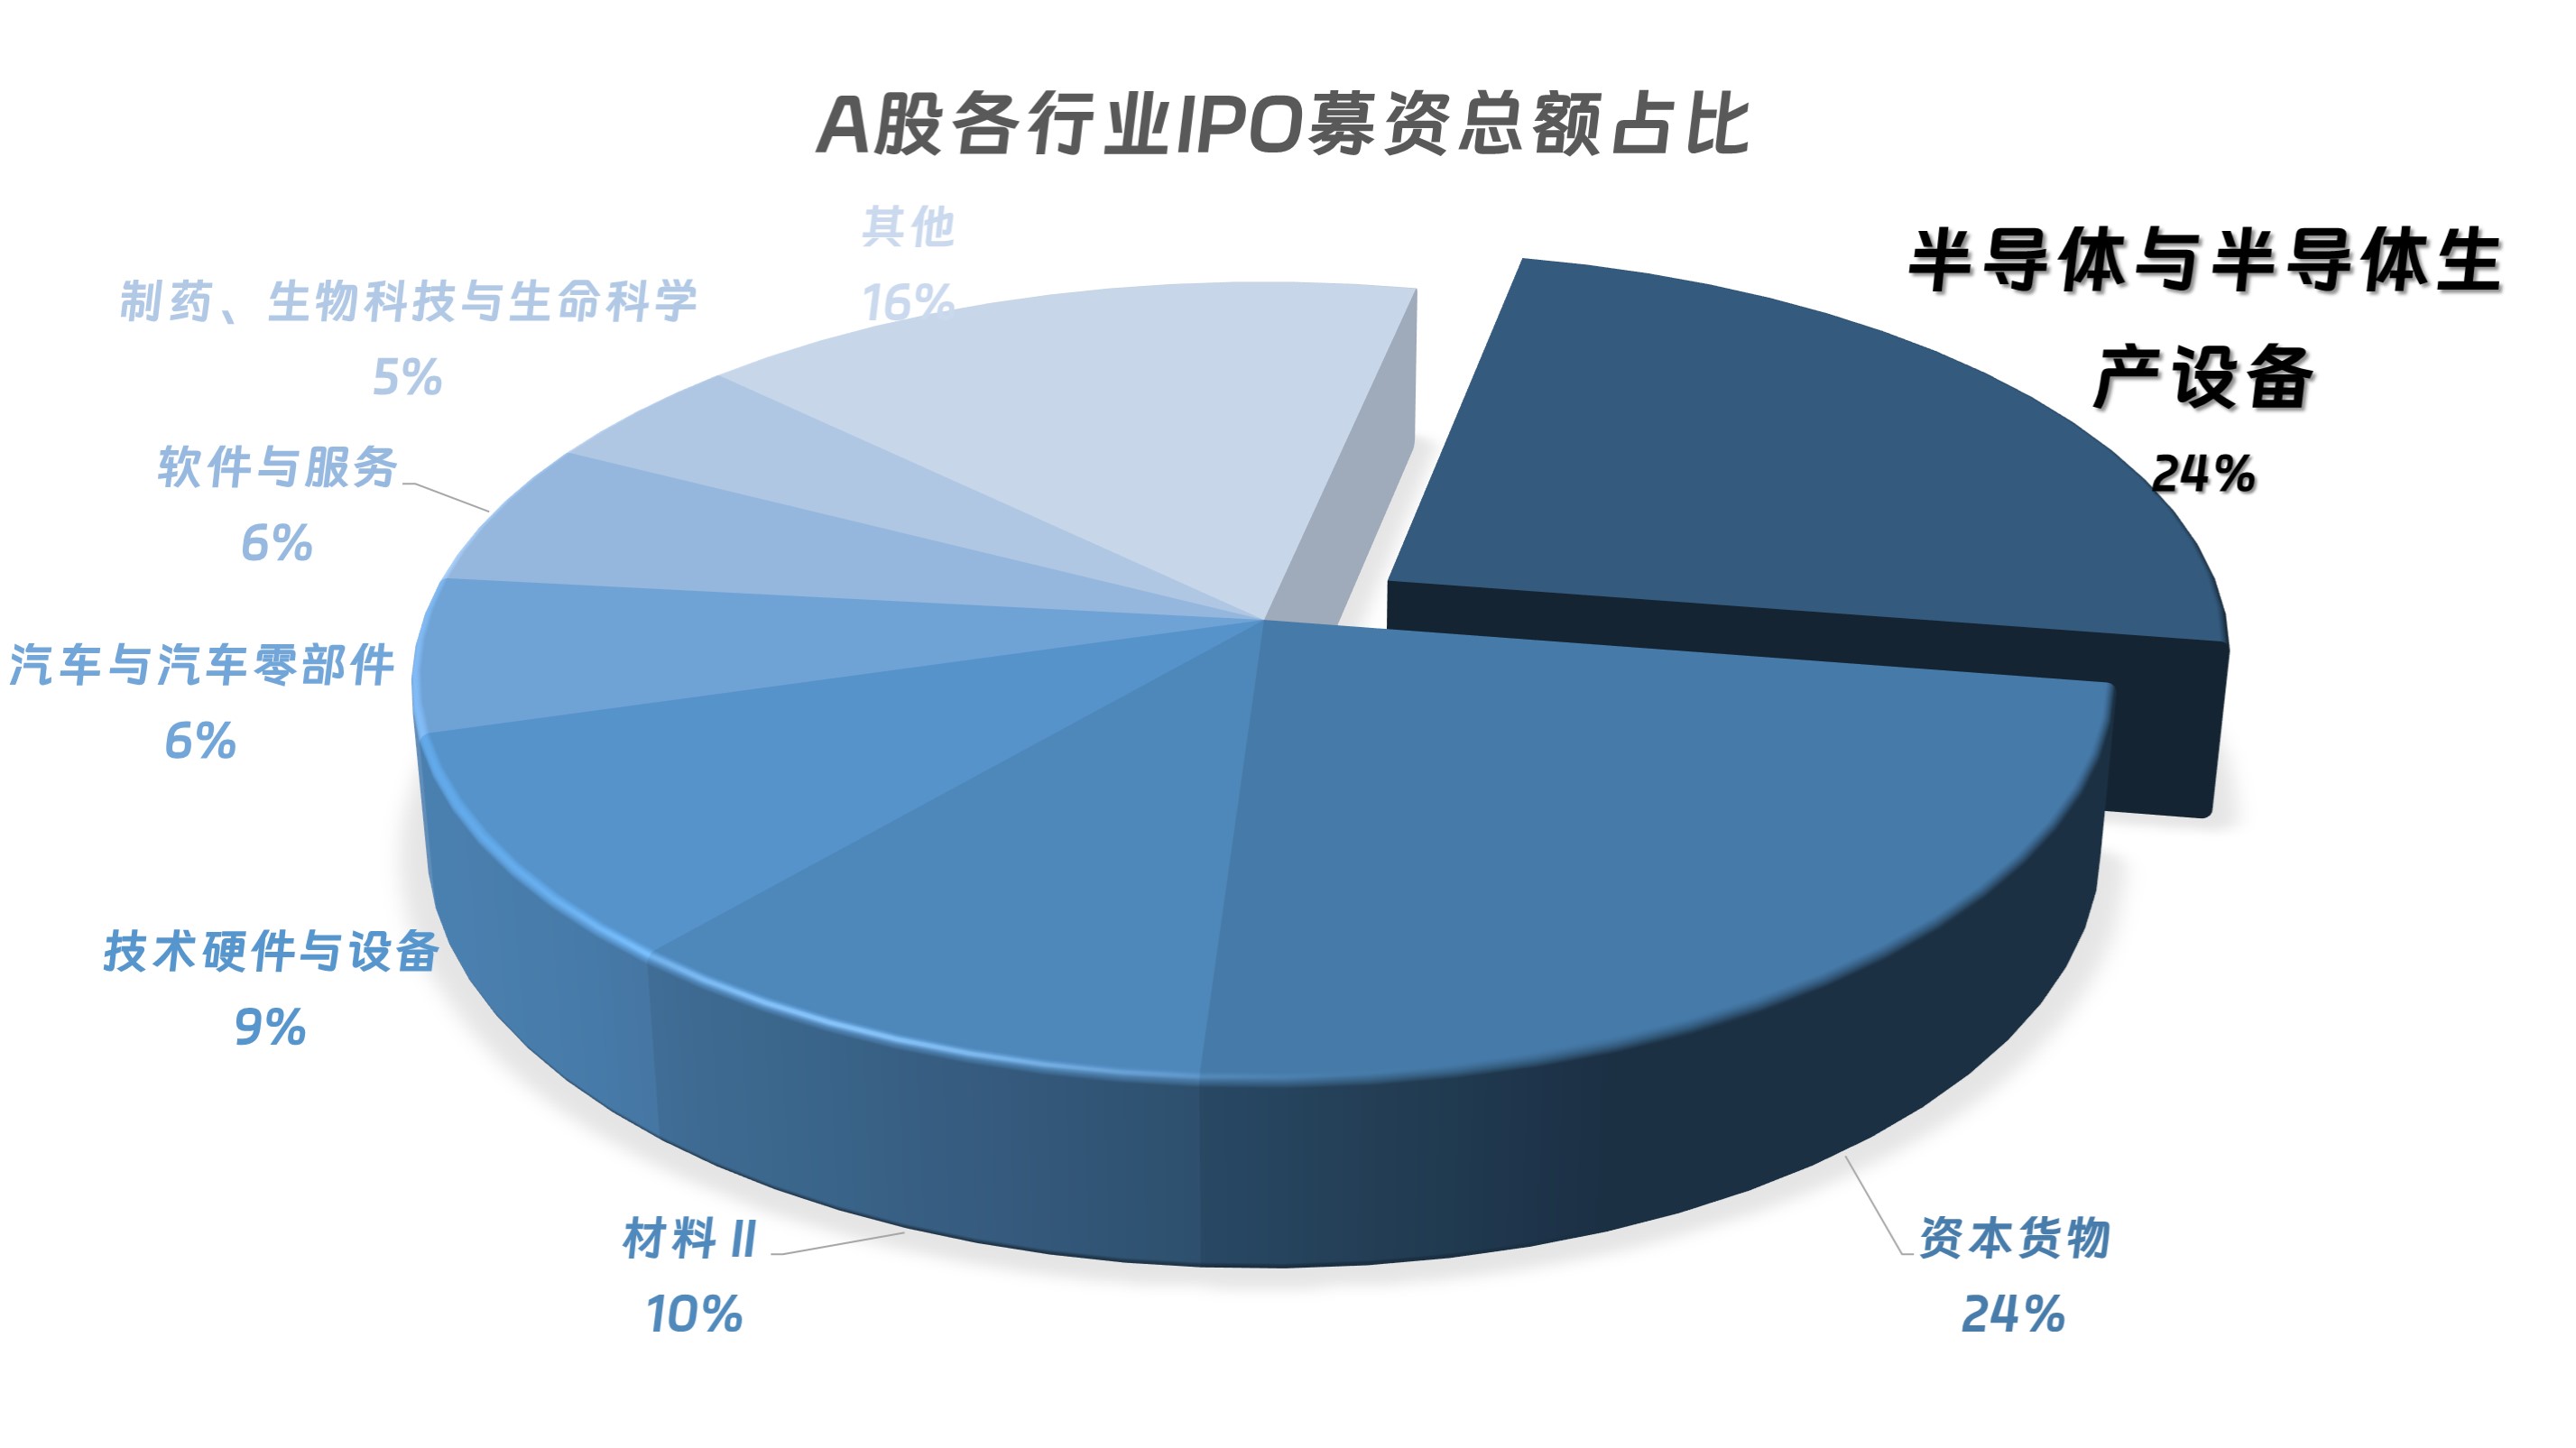 A股迎来年内最大IPO 华虹半导体上市首日涨逾2% 年内半导体IPO占比超20%